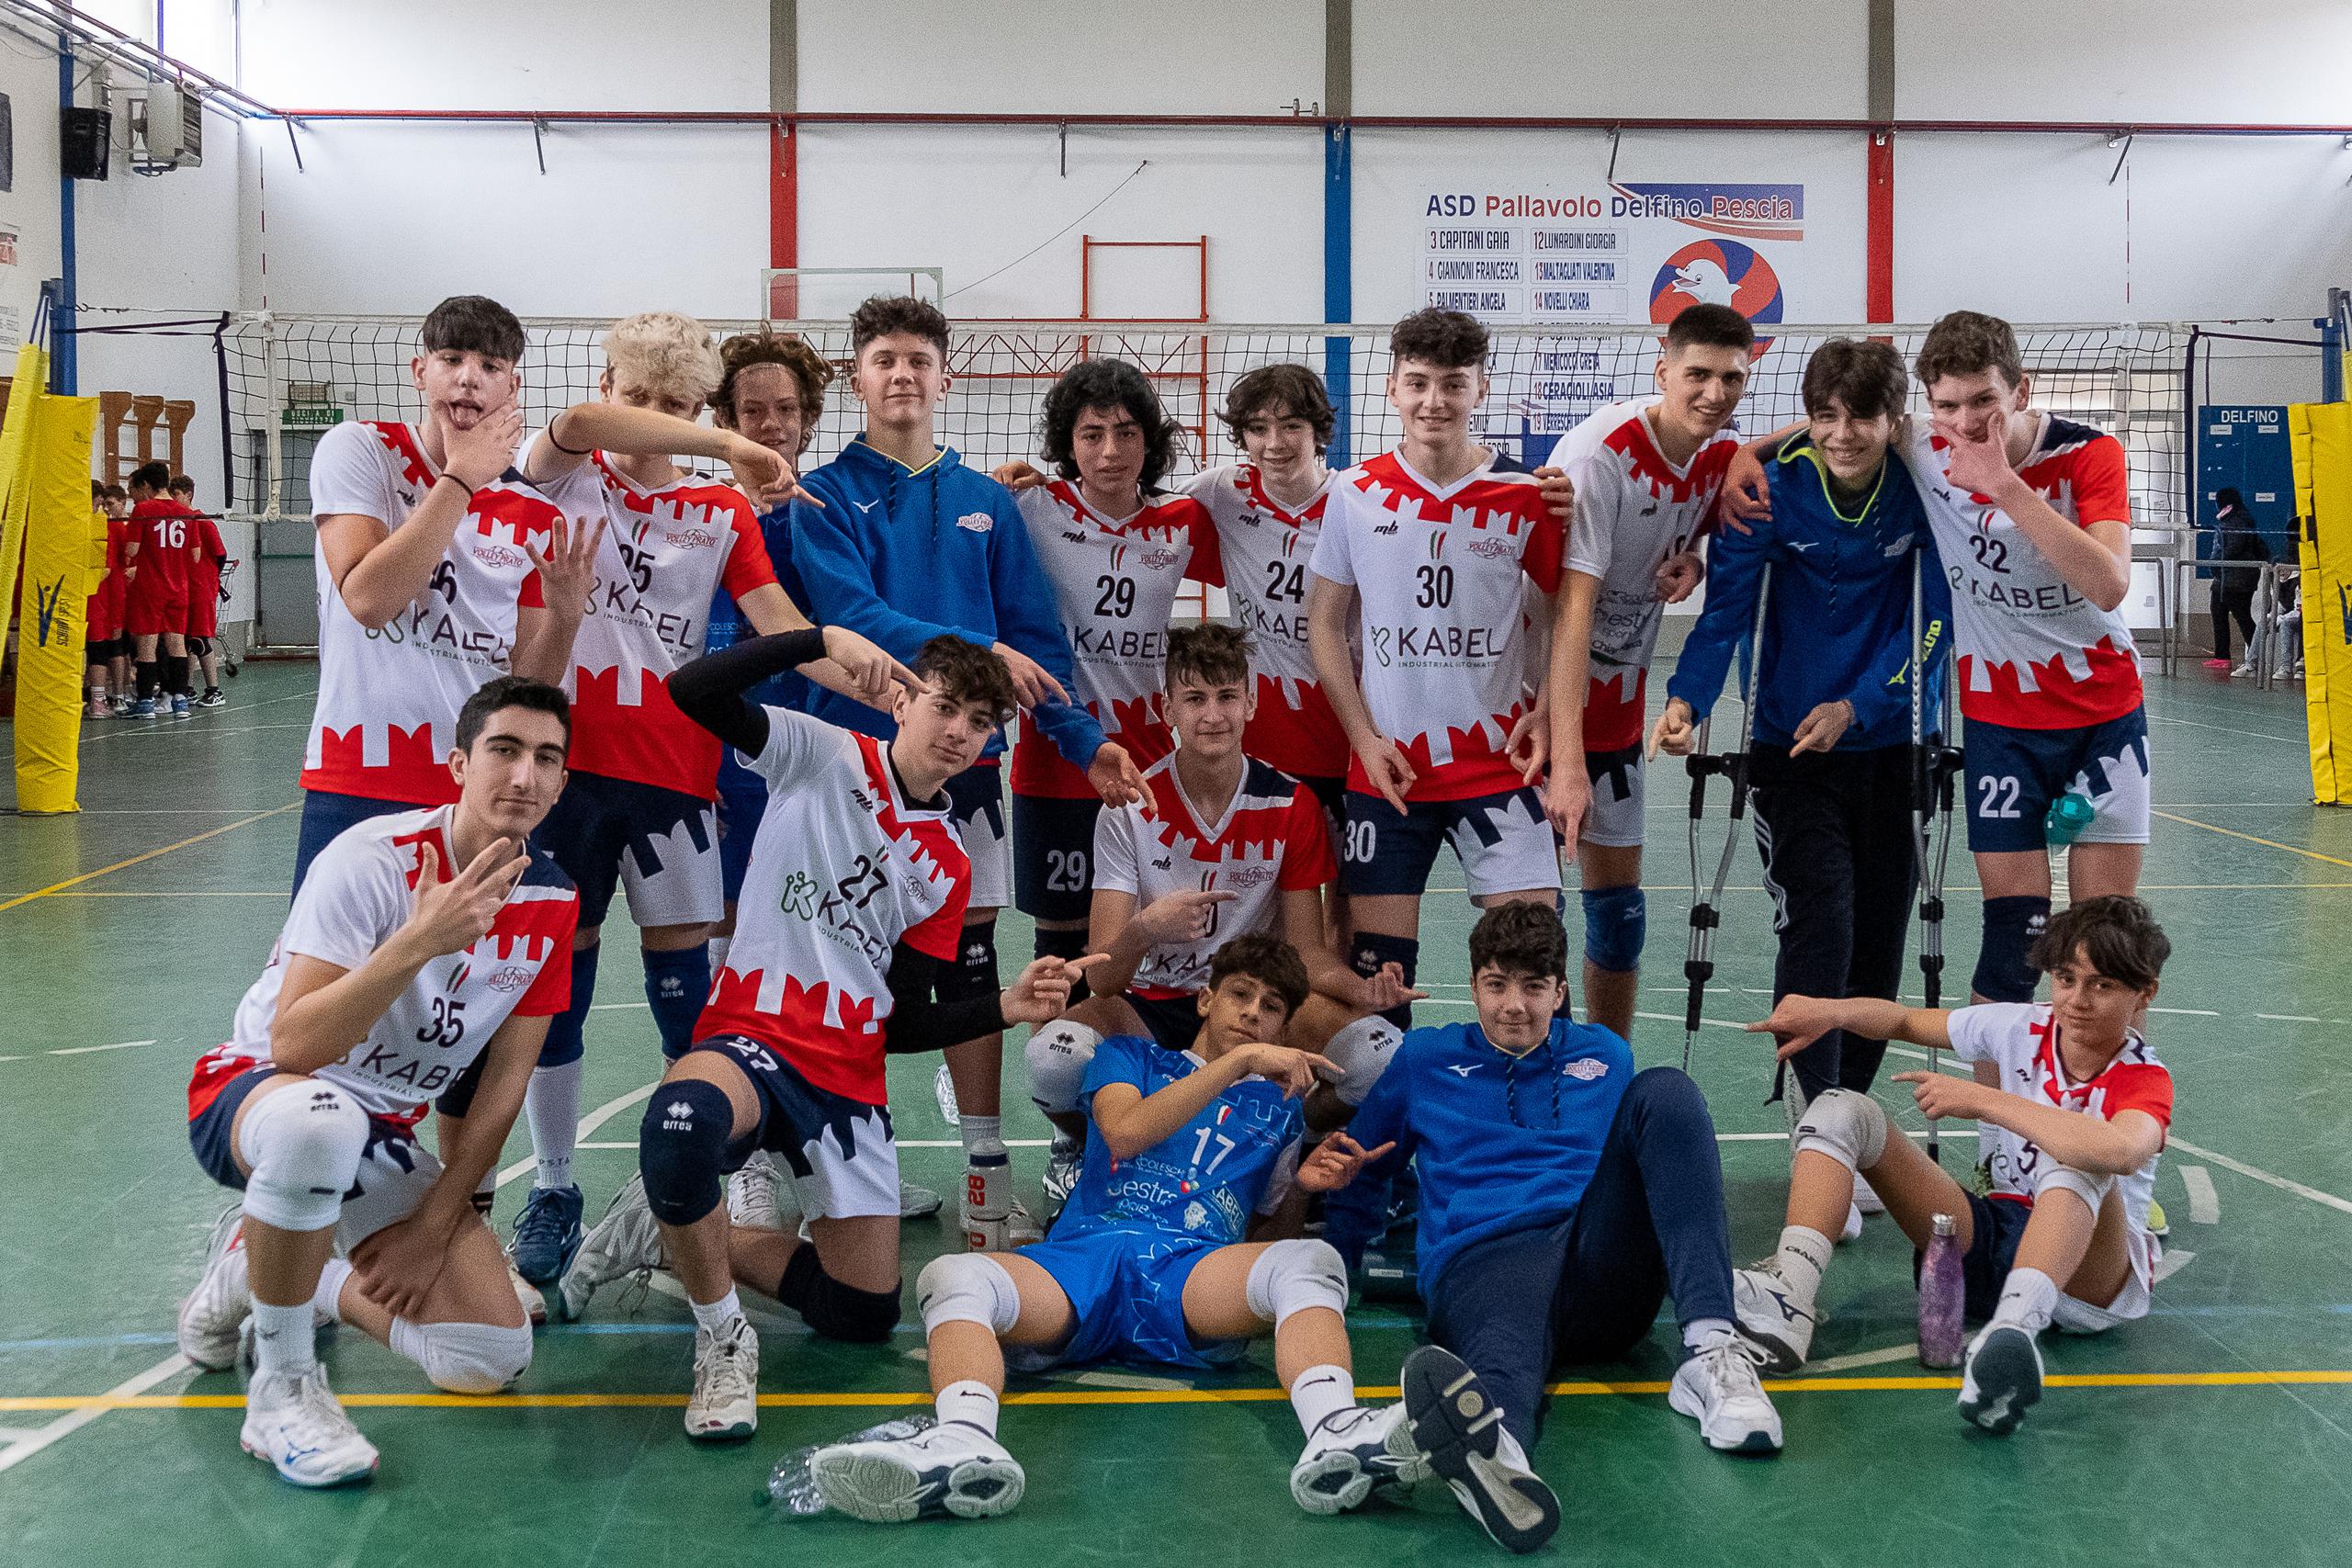 Regionali Under 15: Volley Prato vince a Pescia e consolida la posizione al vertice